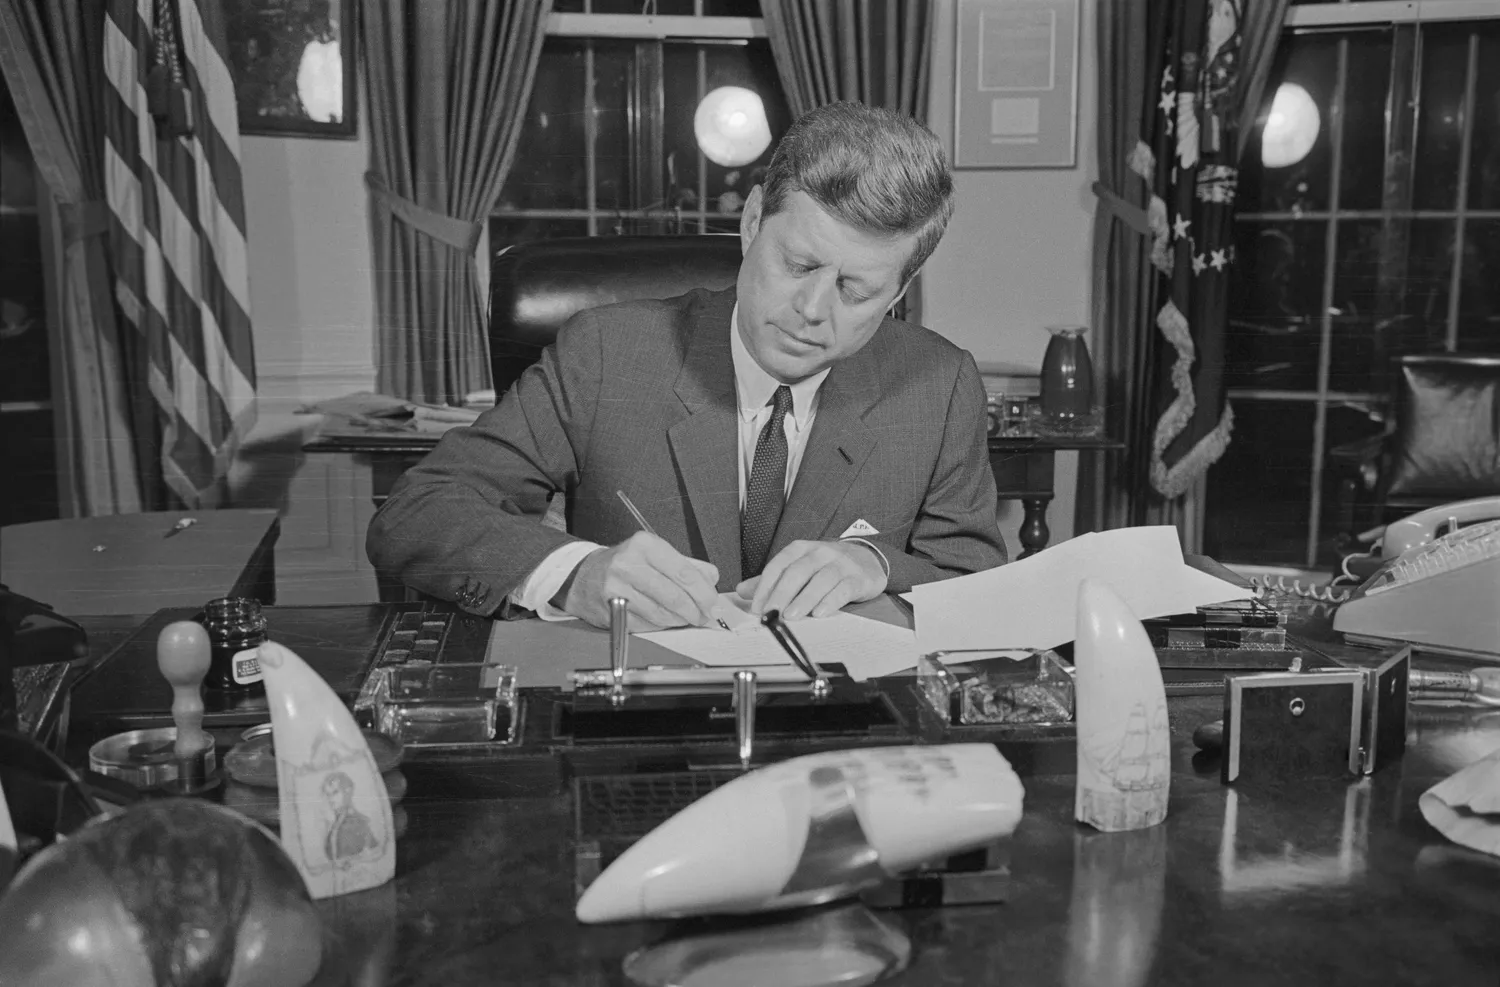 President John F. Kennedy in Oval Office